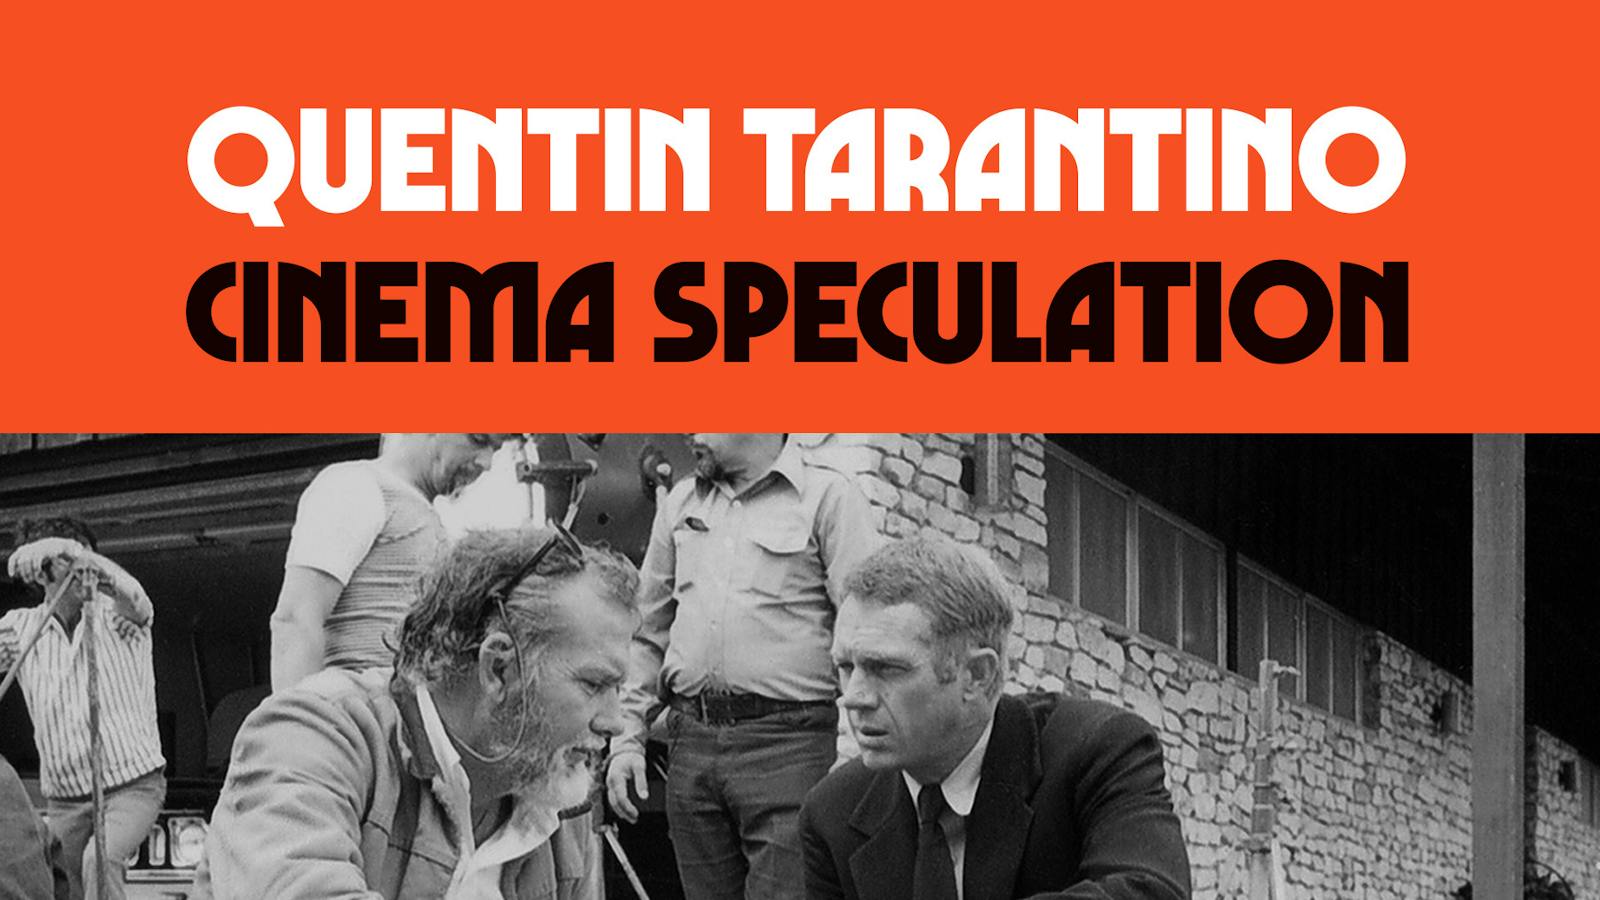 Cinema Speculation by Quentin Tarantino - thescriptblog.com